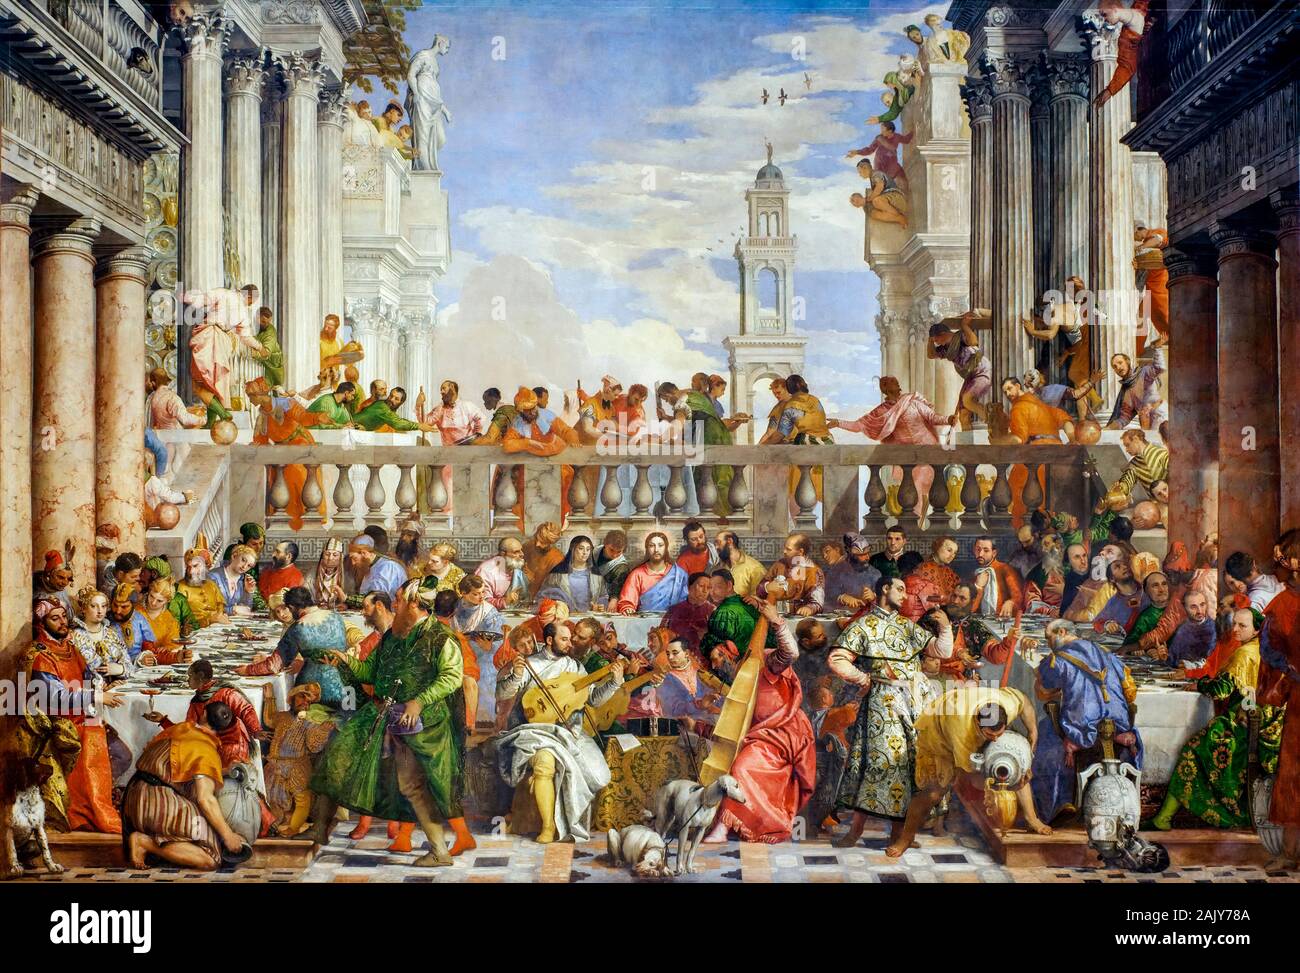 Paolo Veronese, la fête de mariage à Cana, (le mariage à Cana), peinture Renaissance, 1562-1563 Banque D'Images